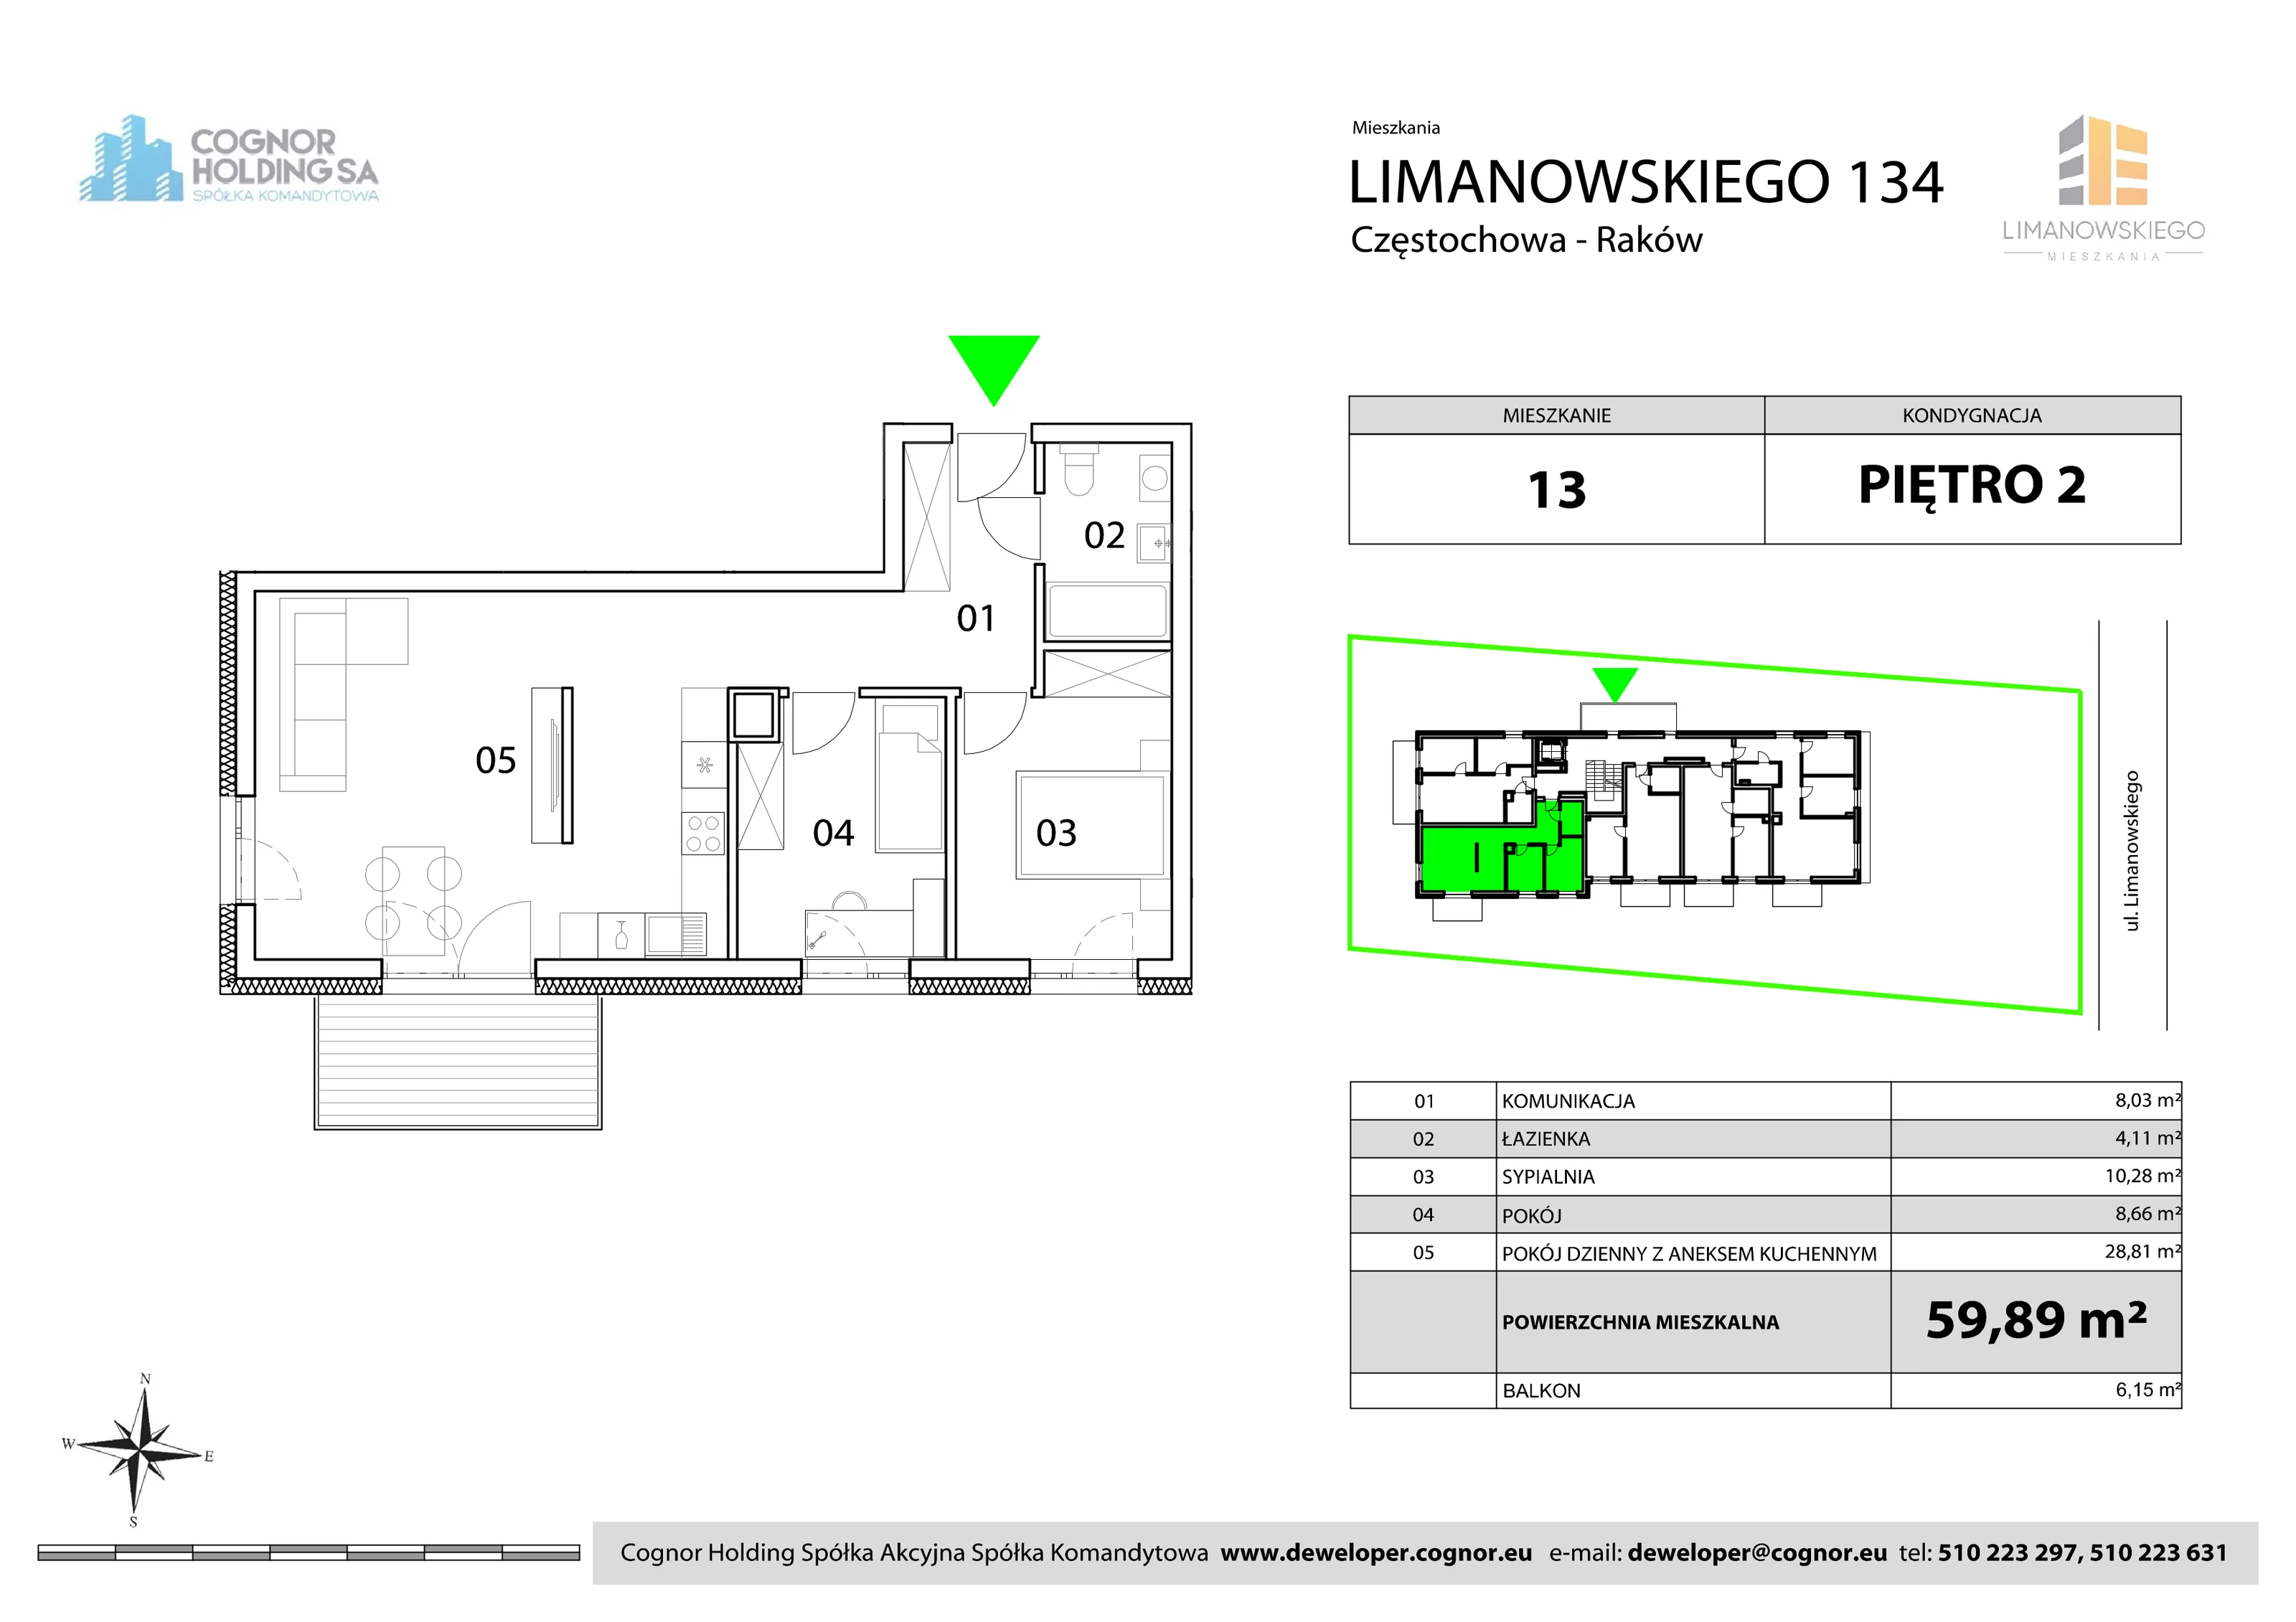 Mieszkanie 59,89 m², piętro 2, oferta nr 13, Limanowskiego Mieszkania, Częstochowa, Raków, ul. Bolesława Limanowskiego 134